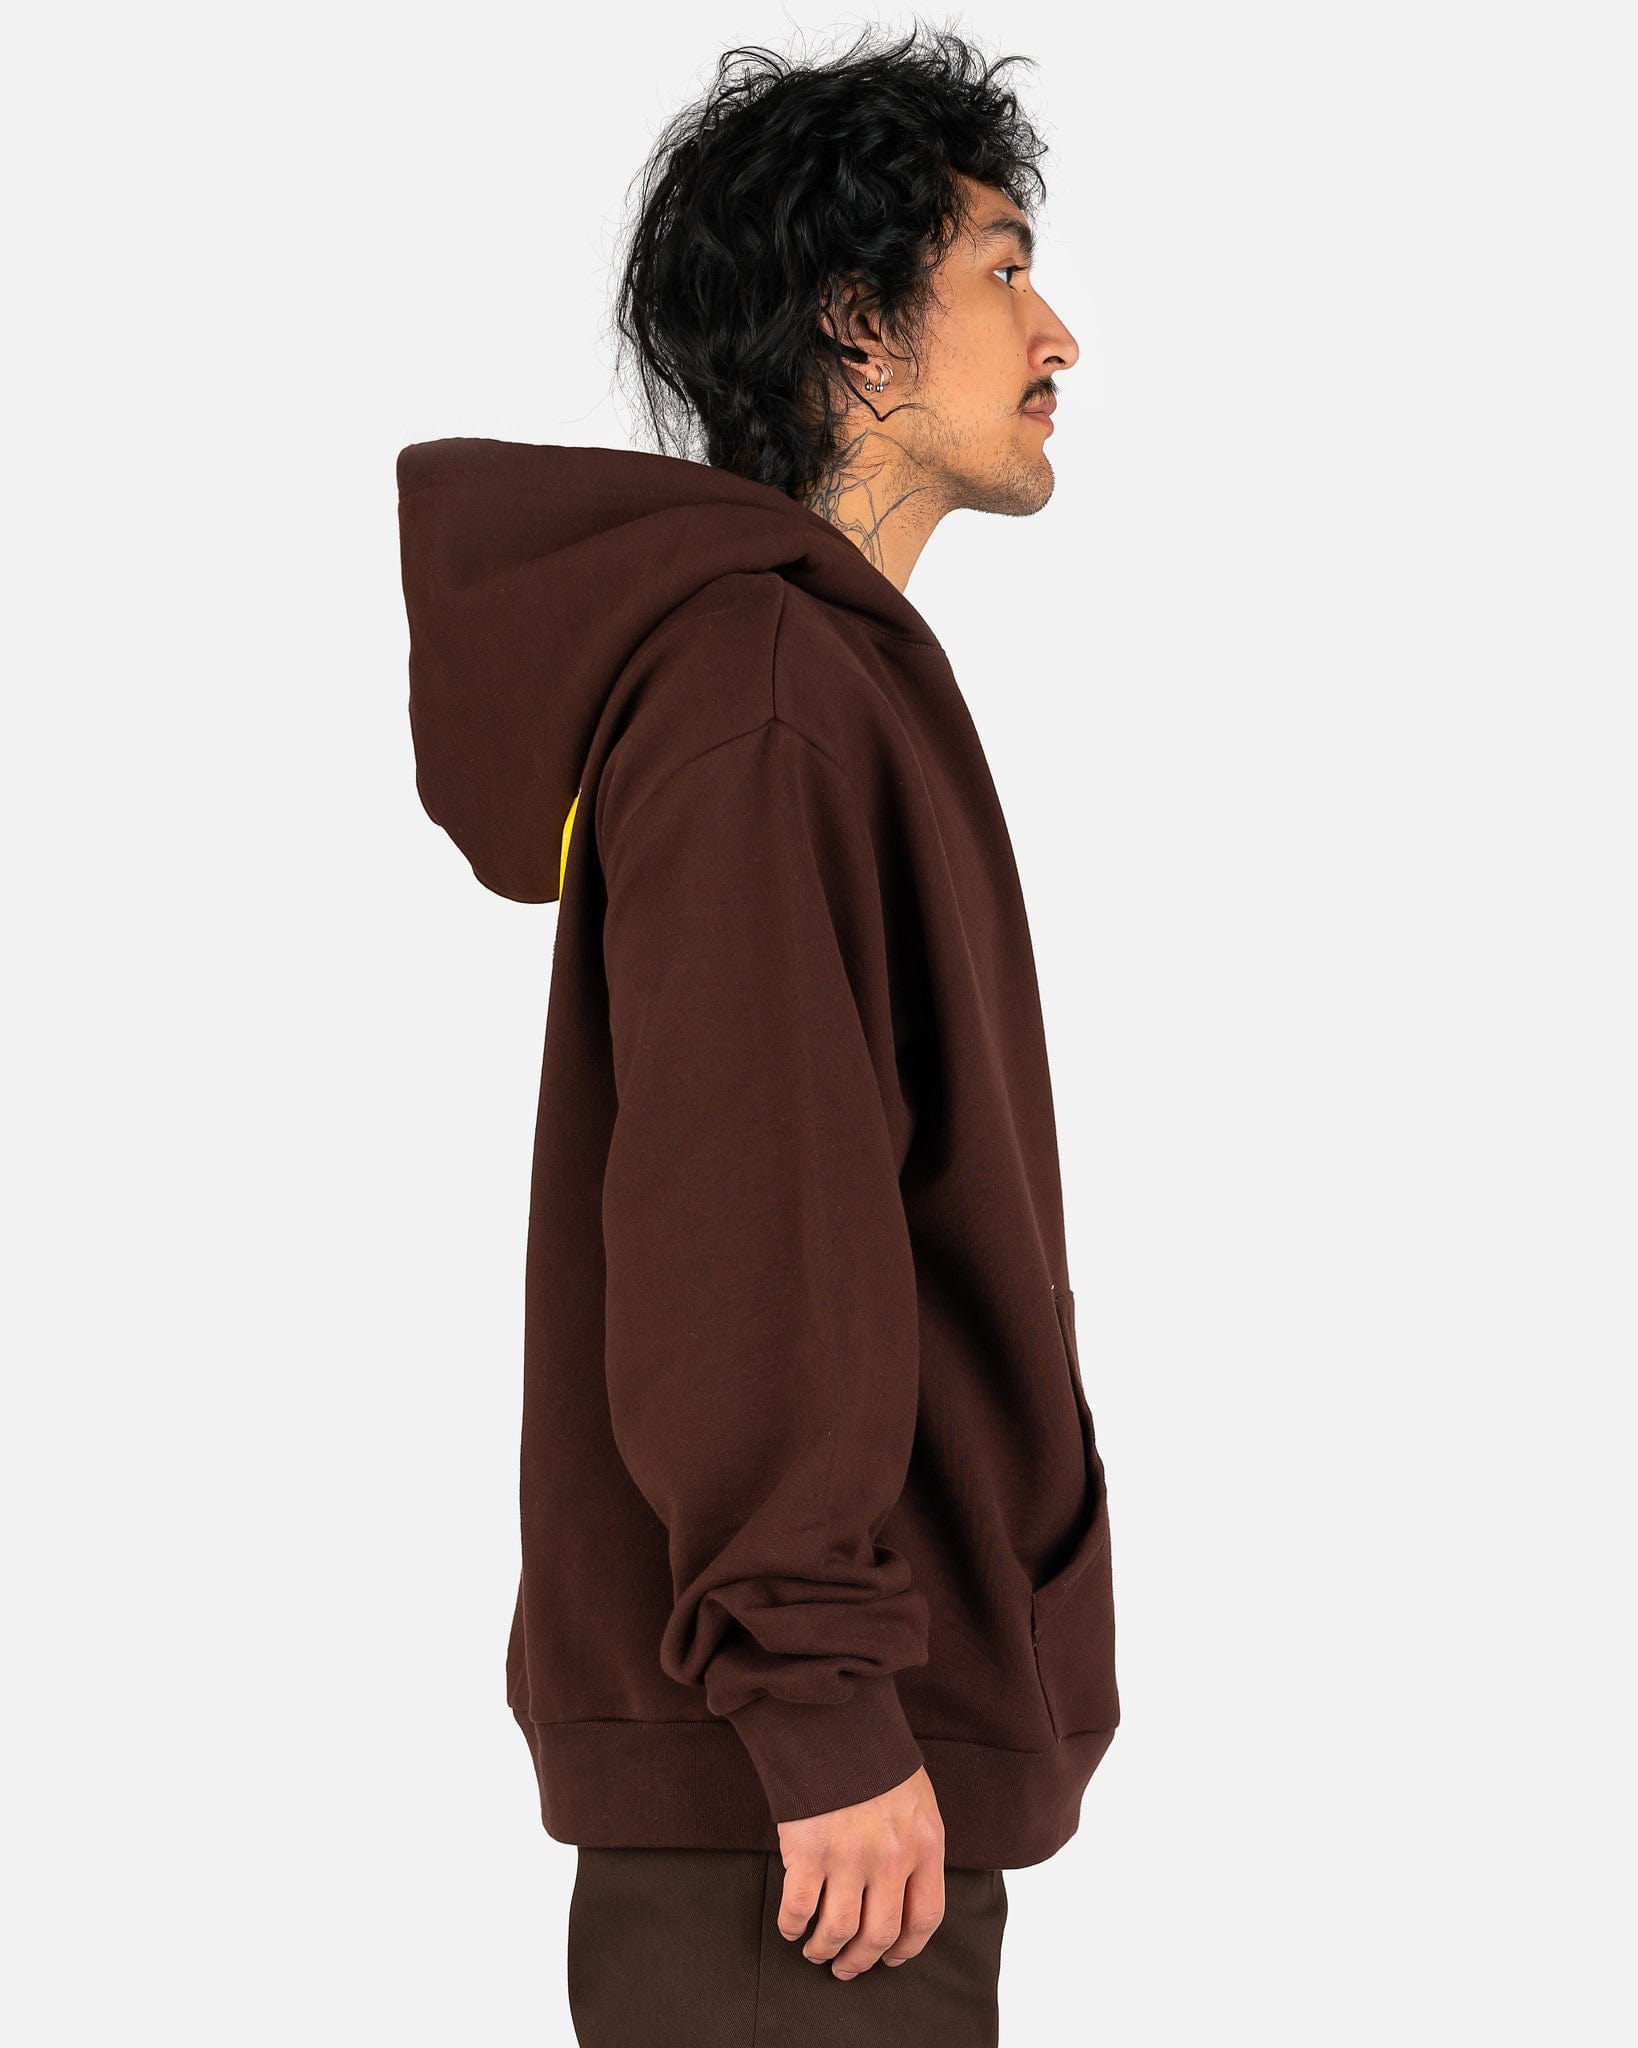 Marni Men's Sweatshirts 'El Diablito' Motif Hoodie in Black/Brown